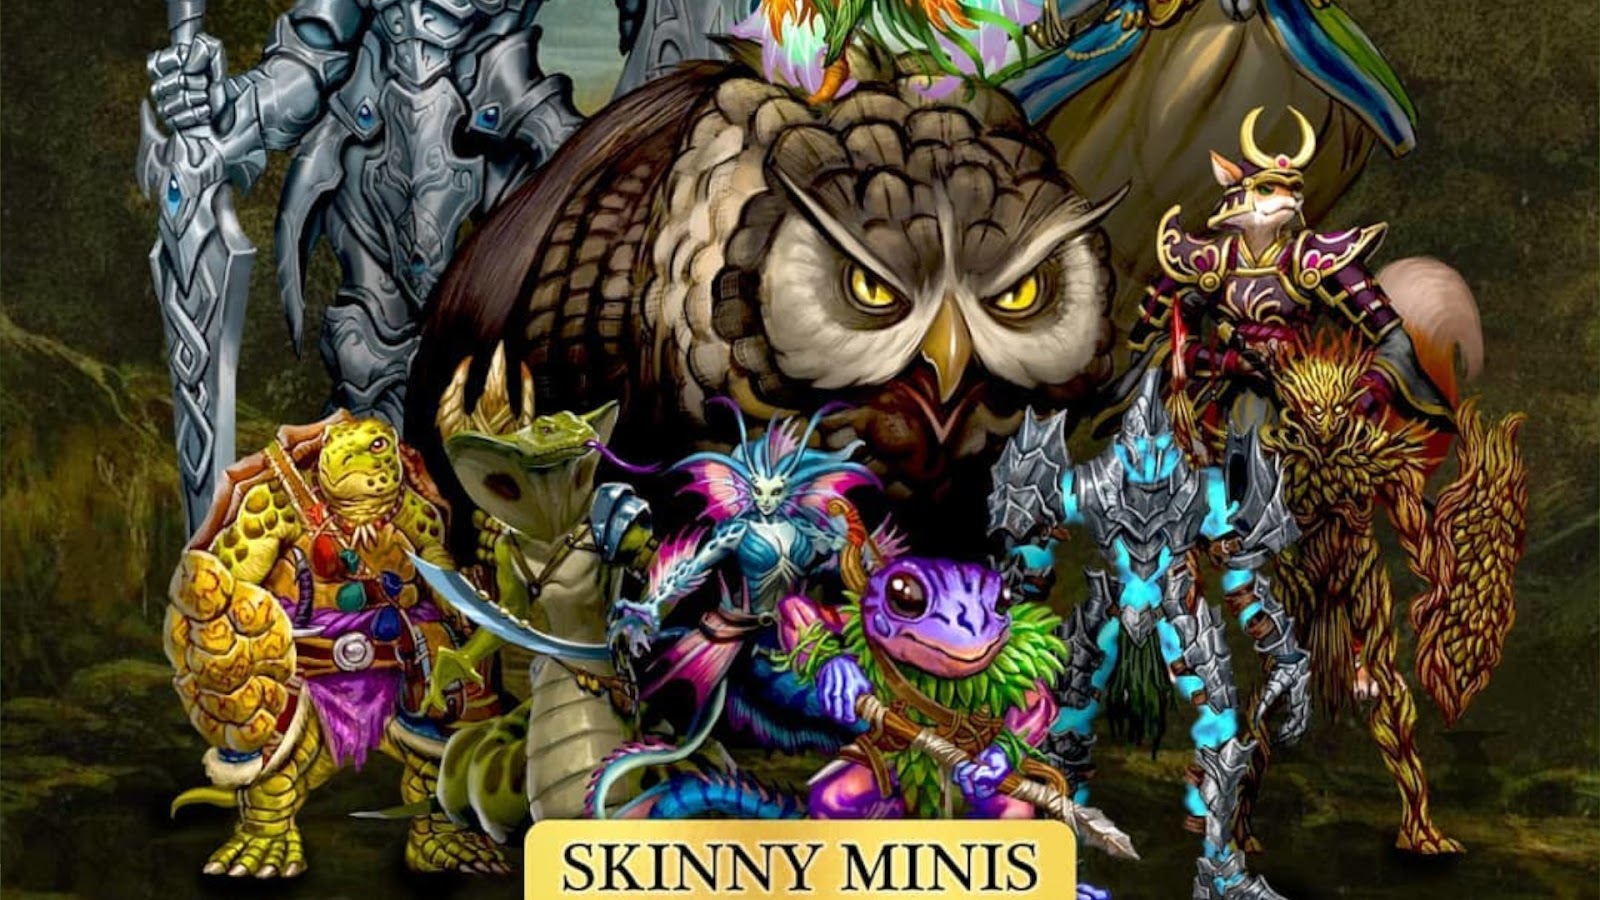 Kickstarter Highlights - Skinny Minis